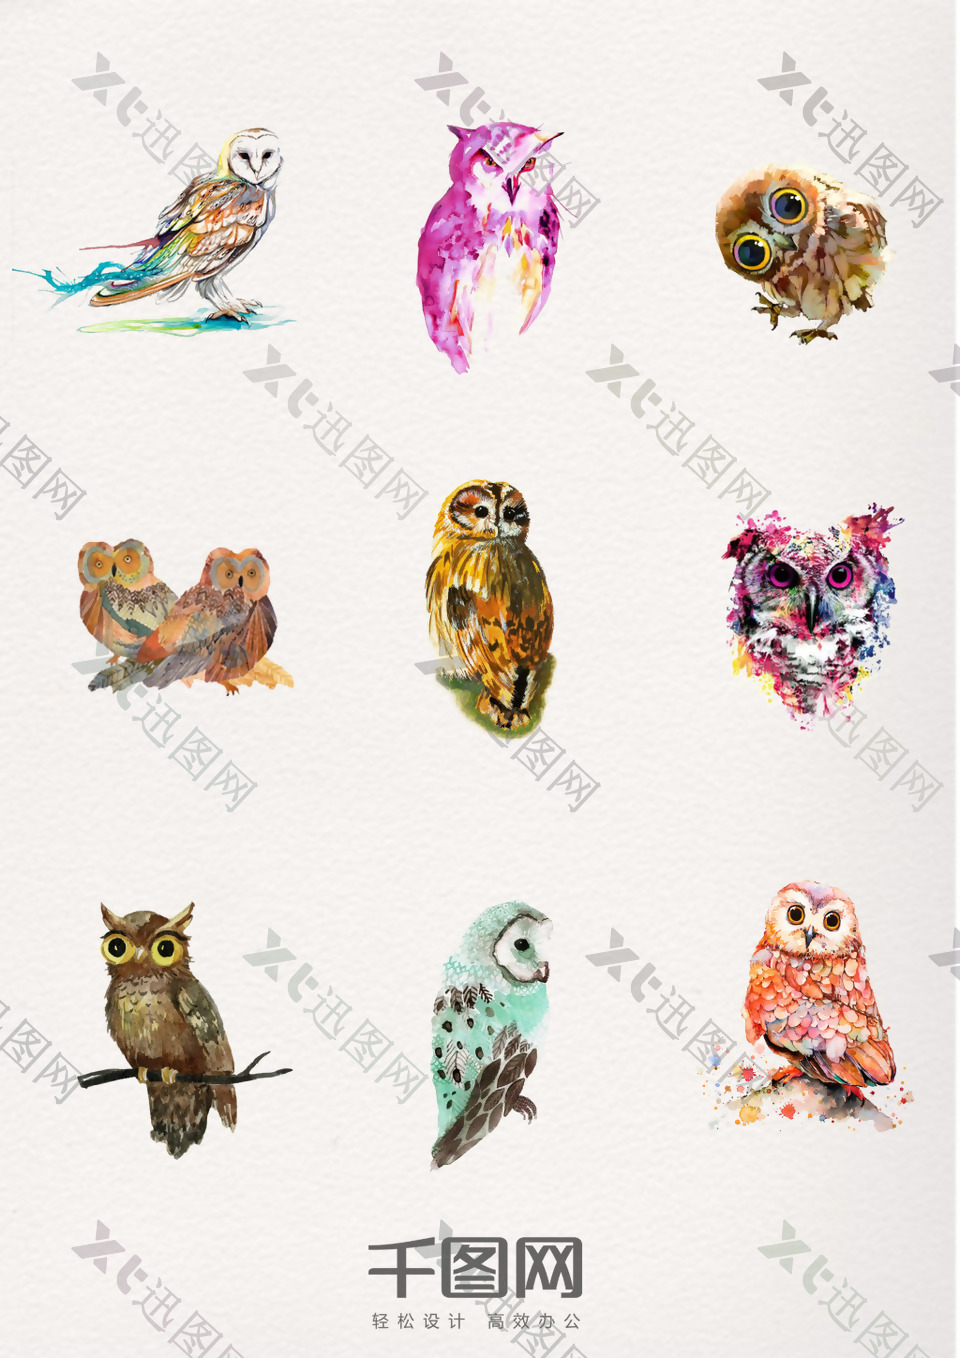 一组水彩动物猫头鹰设计素材